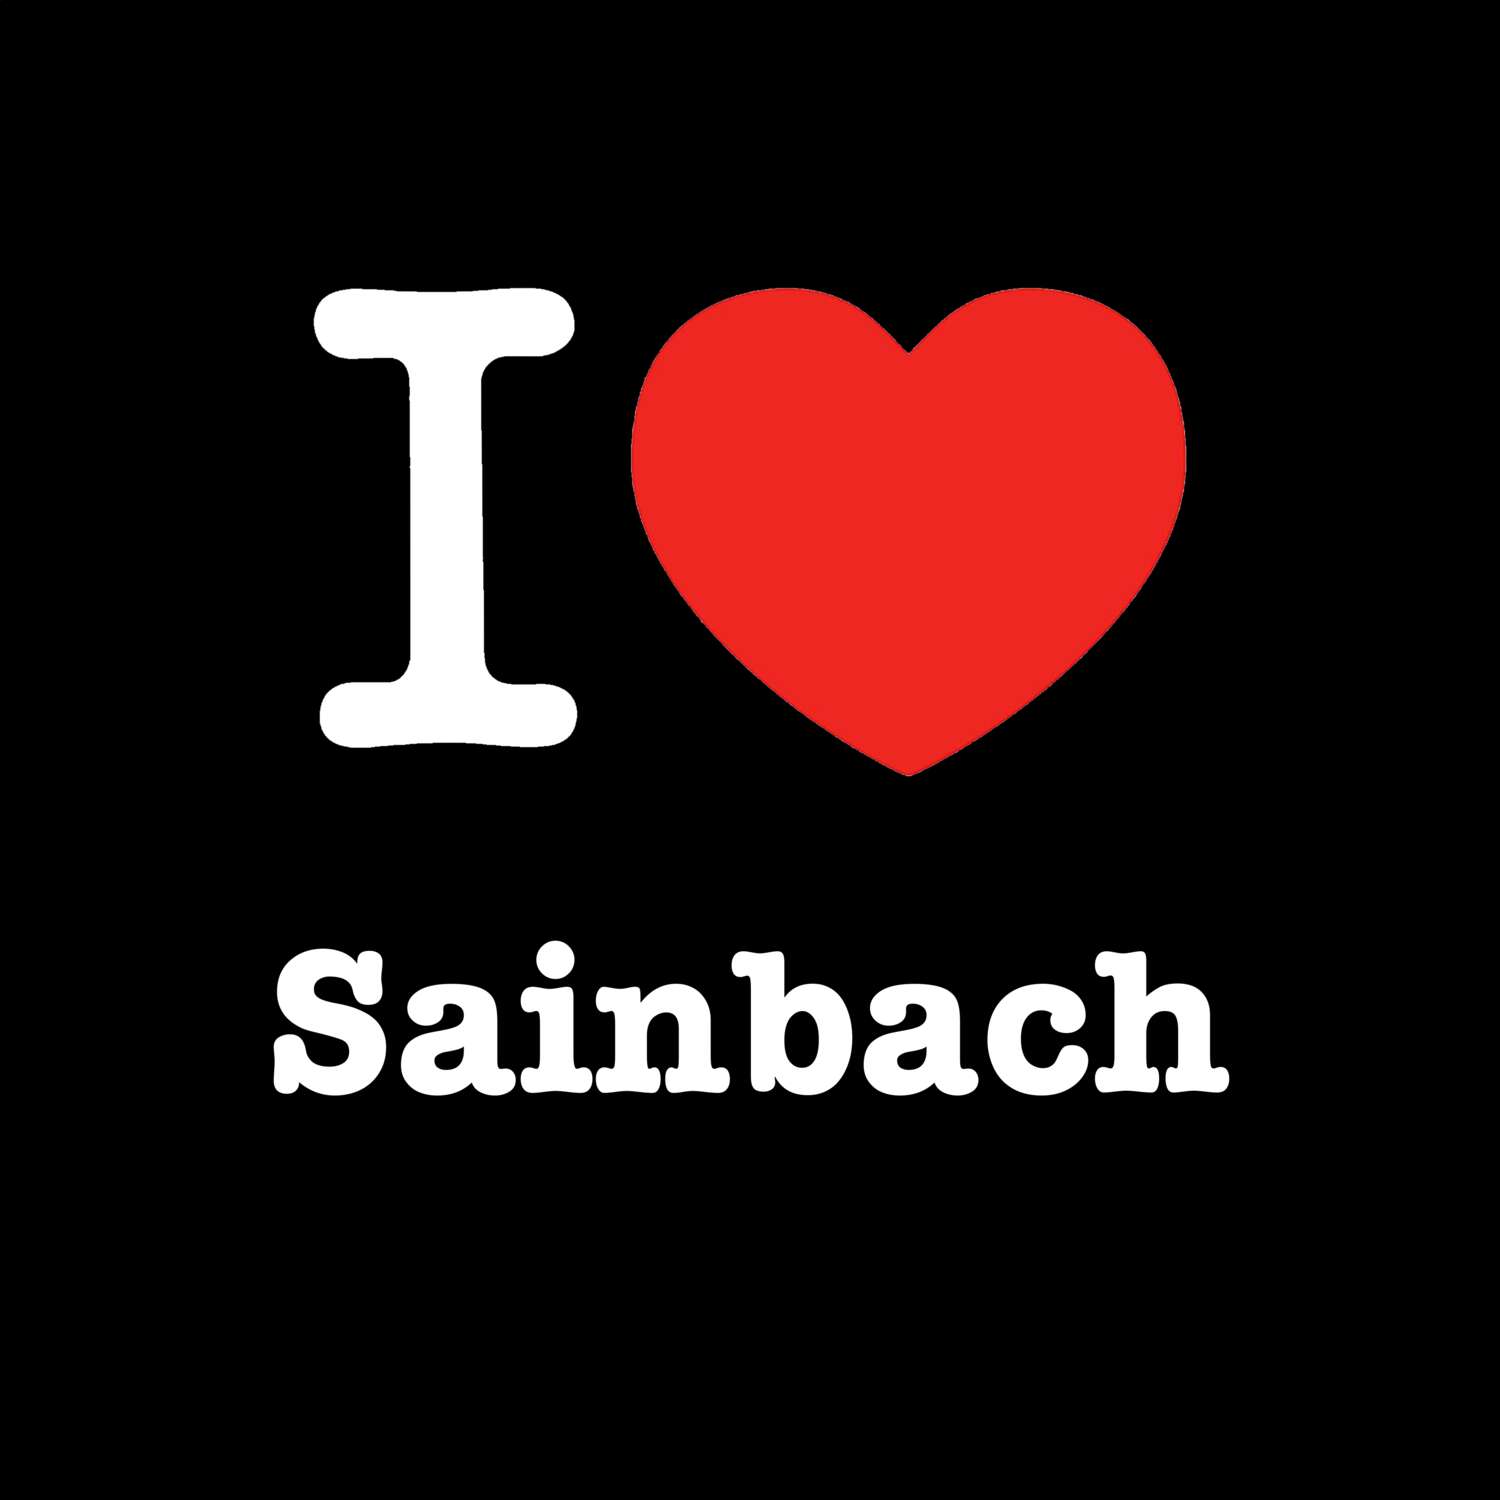 Sainbach T-Shirt »I love«